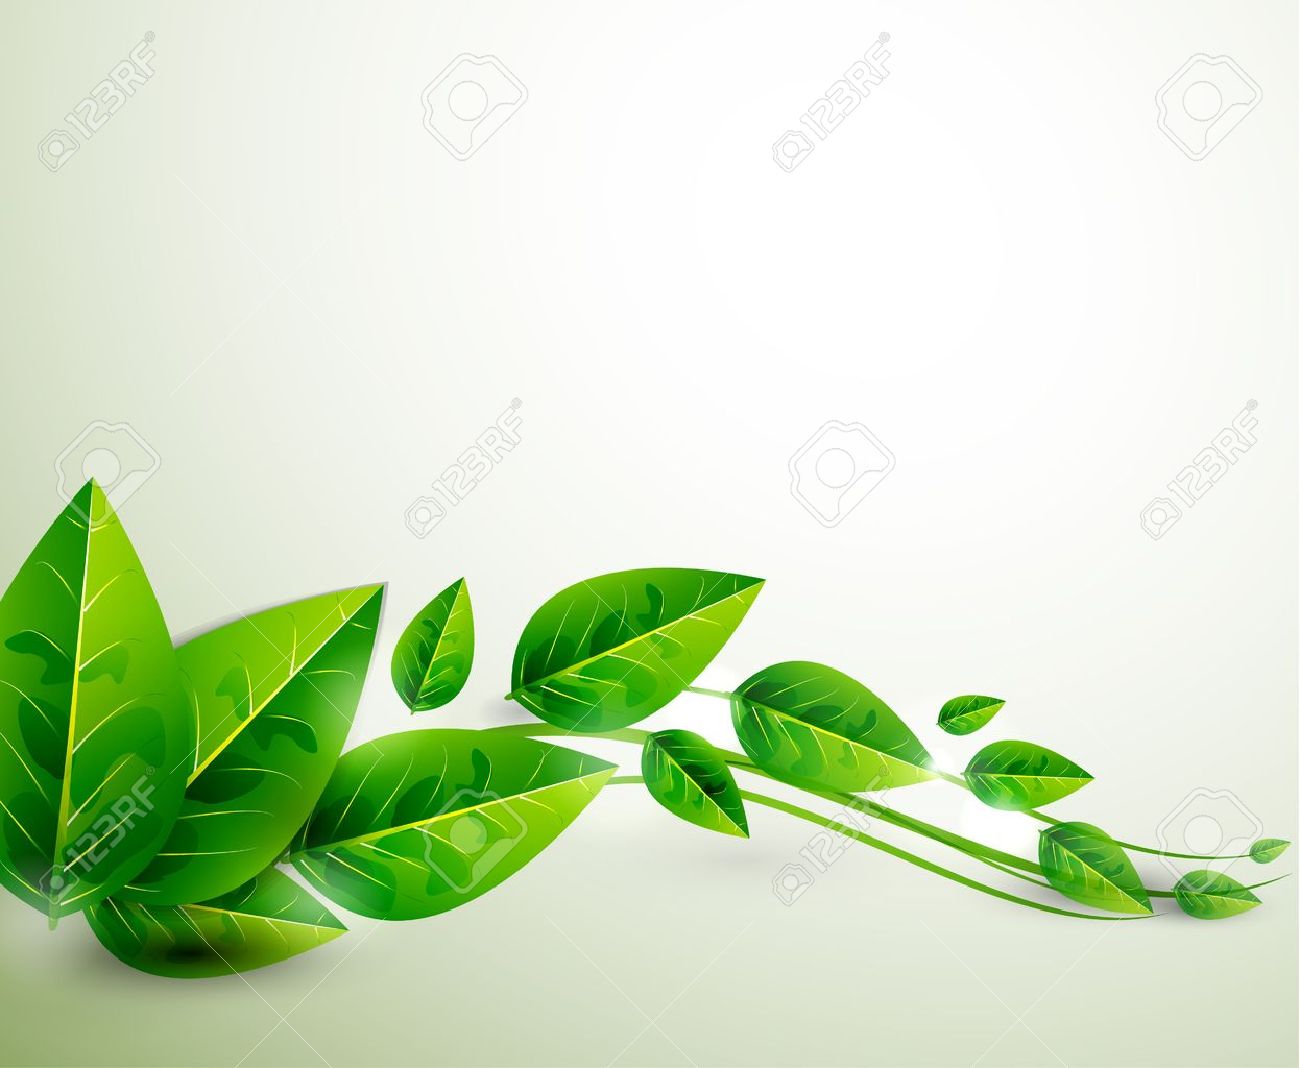 Green Leaf Background Images